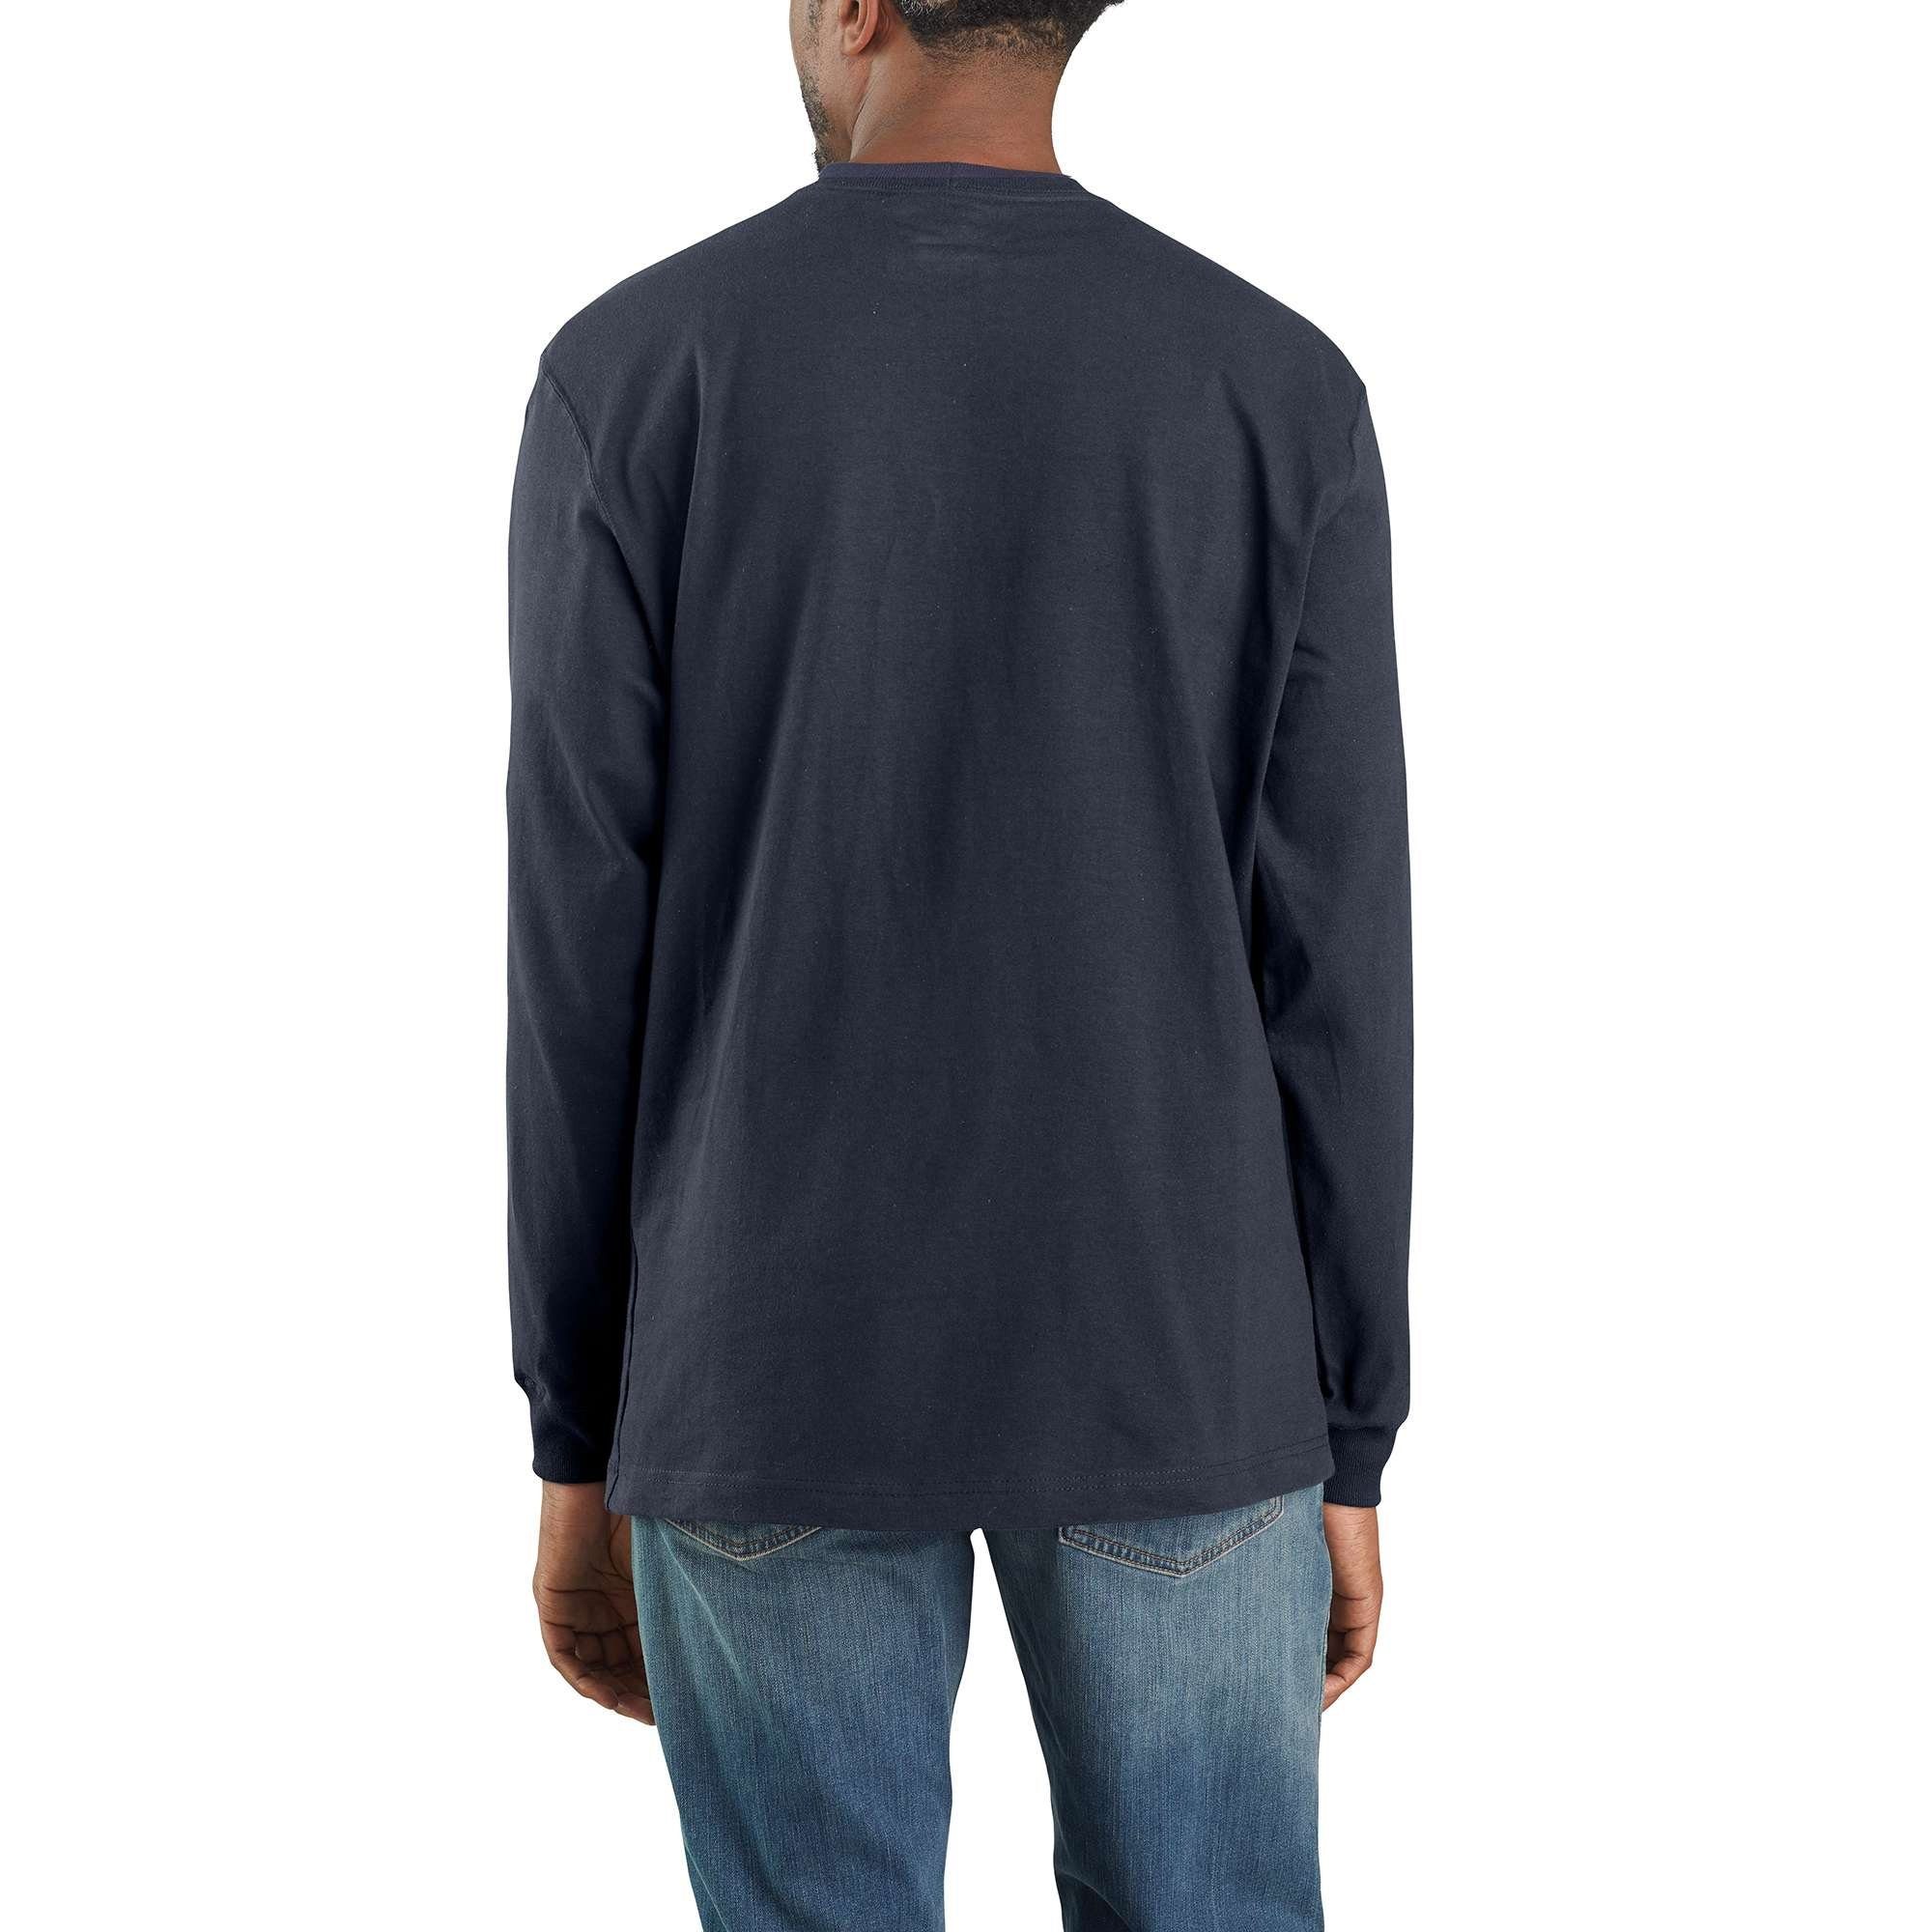 Carhartt Langarmshirt Carhartt Herren navy Long-Sleeve Langarmshirt Heavyweight Fit T-Shirt Pocket Loose Adult